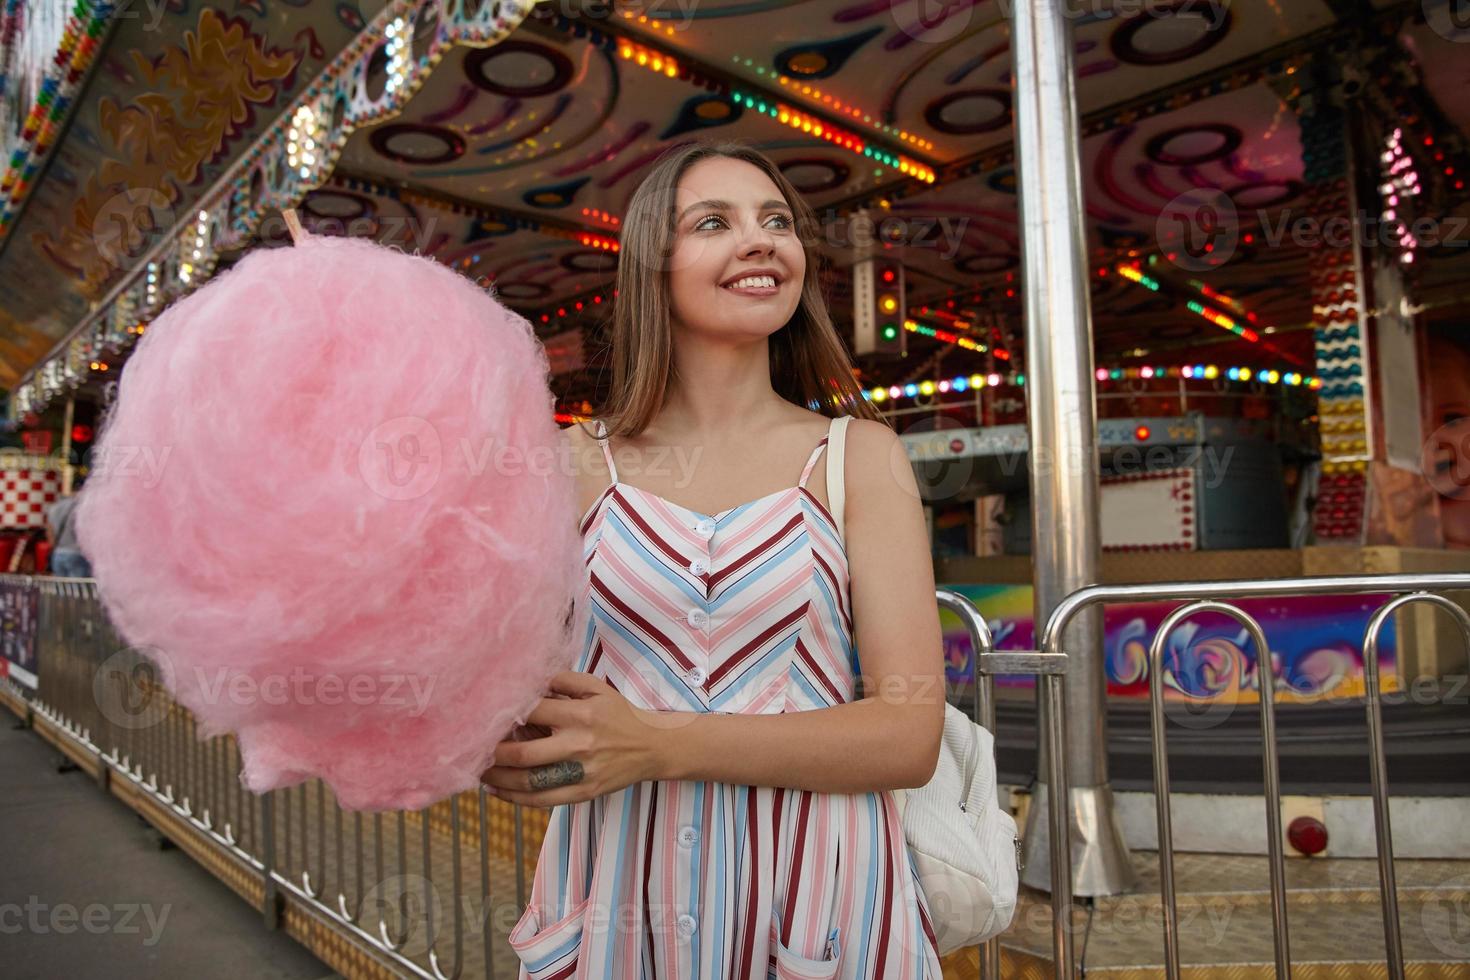 buitenfoto van een mooie jonge brunette vrouw die opzij kijkt met een charmante glimlach, romantische jurk en witte rugzak draagt, door een pretpark loopt met suikerspin op stok foto